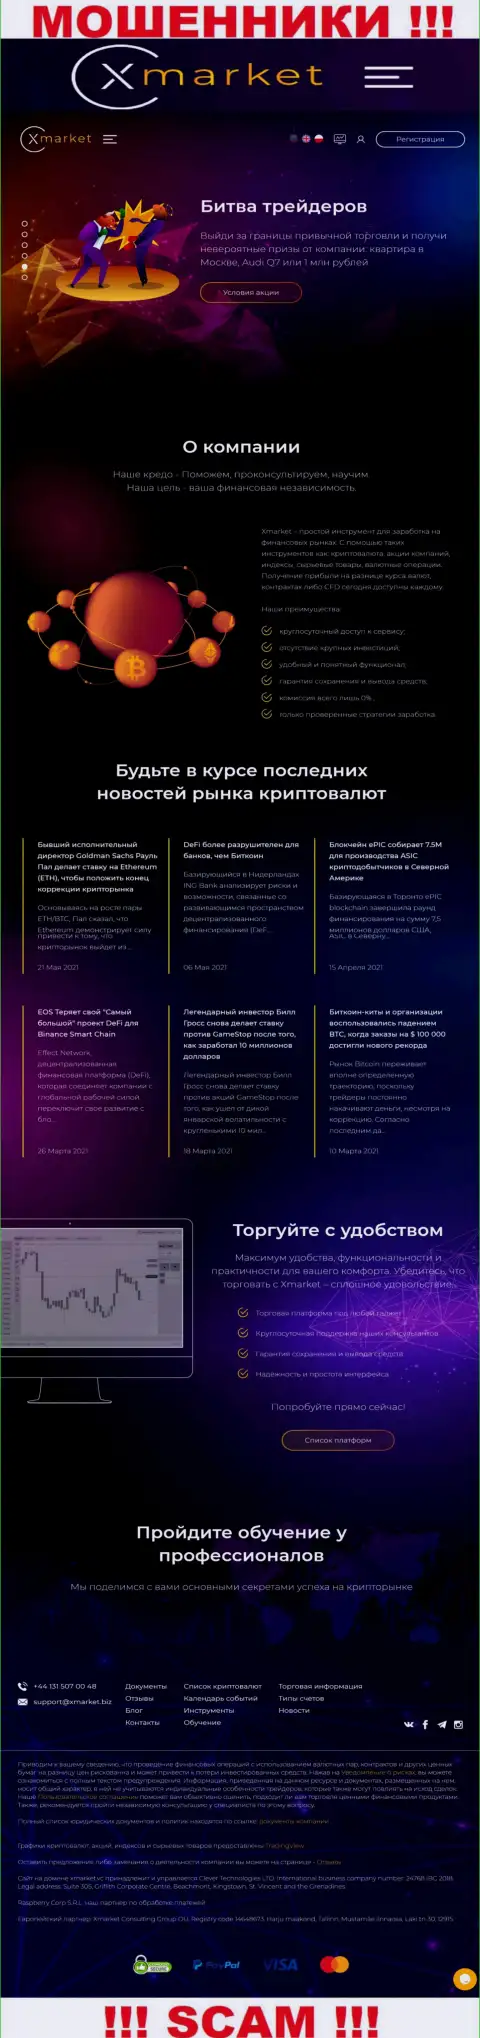 Официальный веб-сервис мошенников и аферистов компании Х Маркет